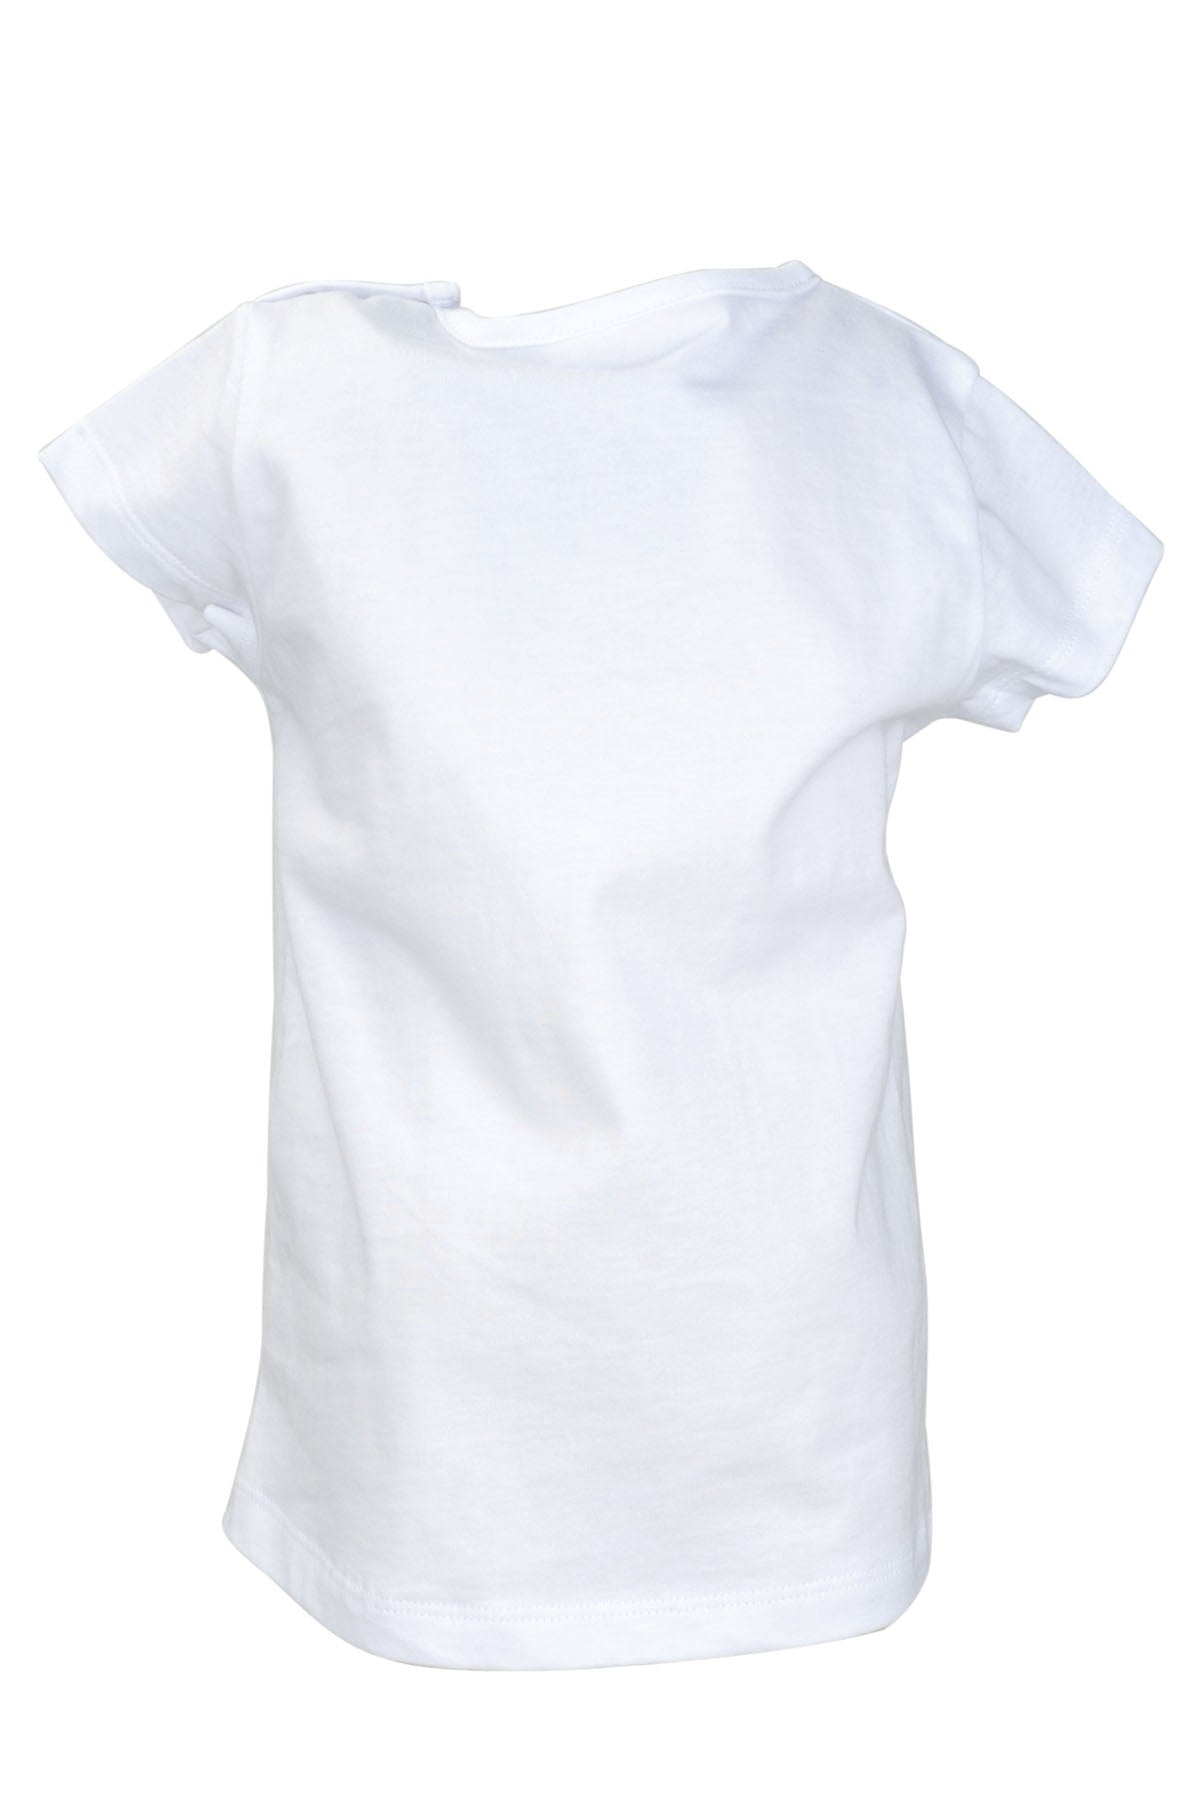 Kız Bebek Beyaz Flamingo Desenli T-Shirt (9ay-4yaş)-2